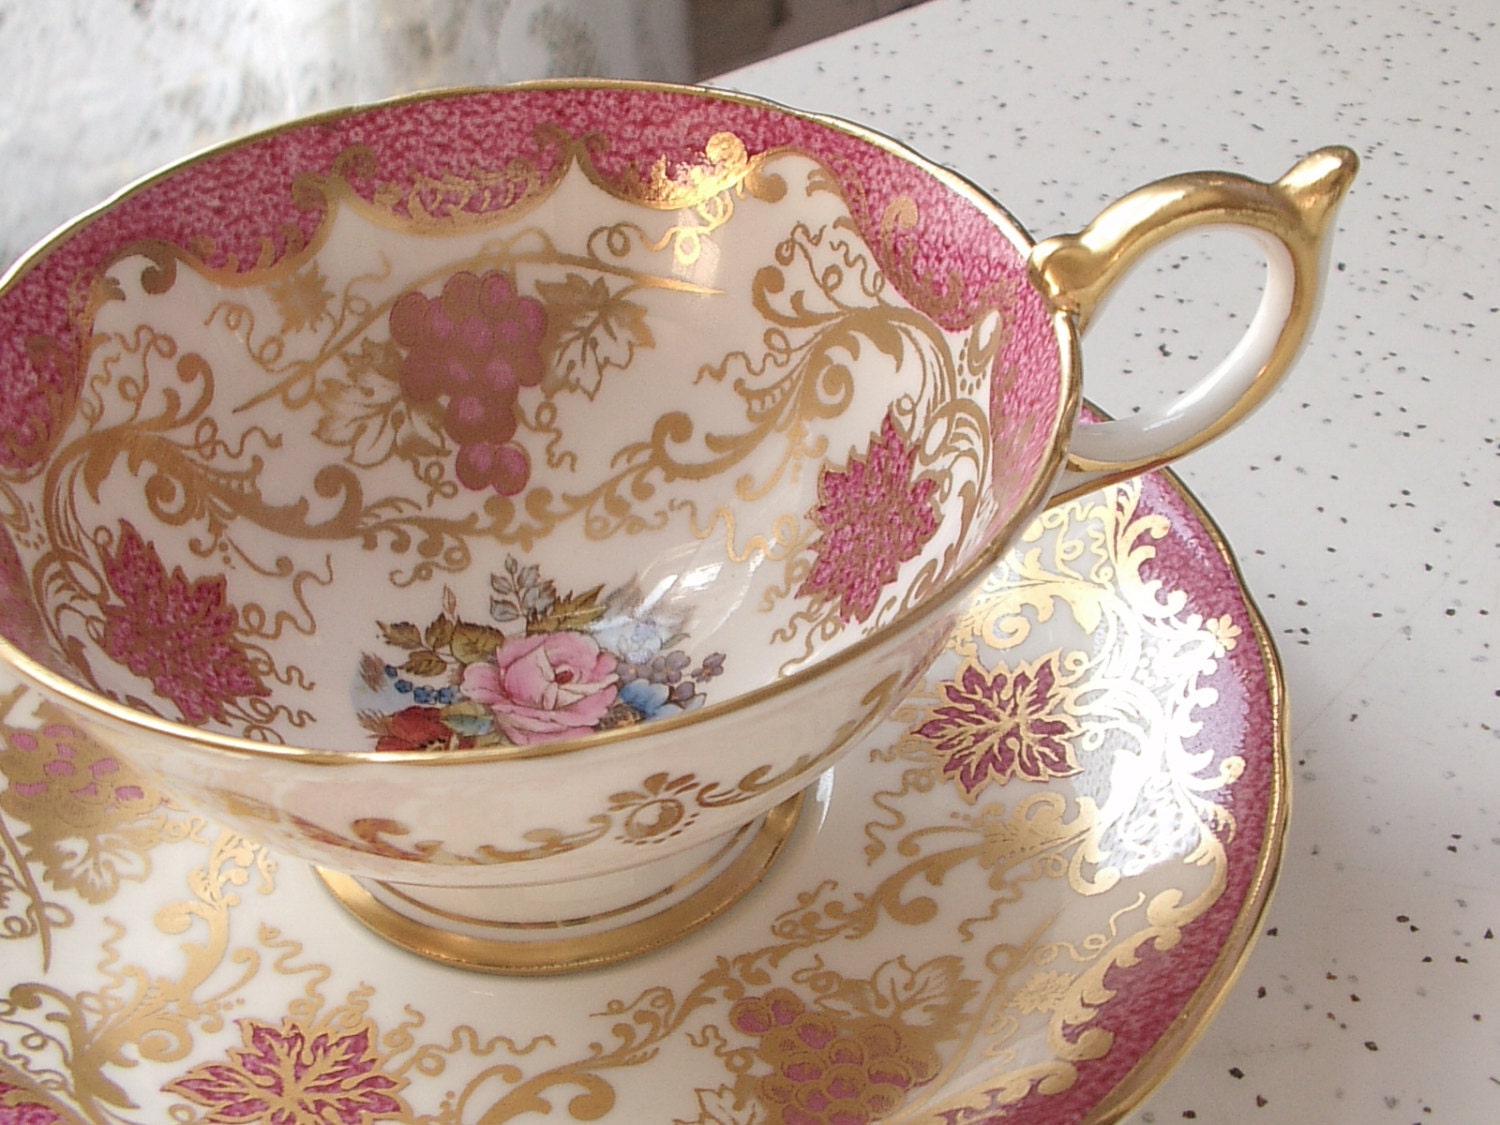 antique & tea pink cup vintage and by sets cup saucer set vintage saucer ShoponSherman